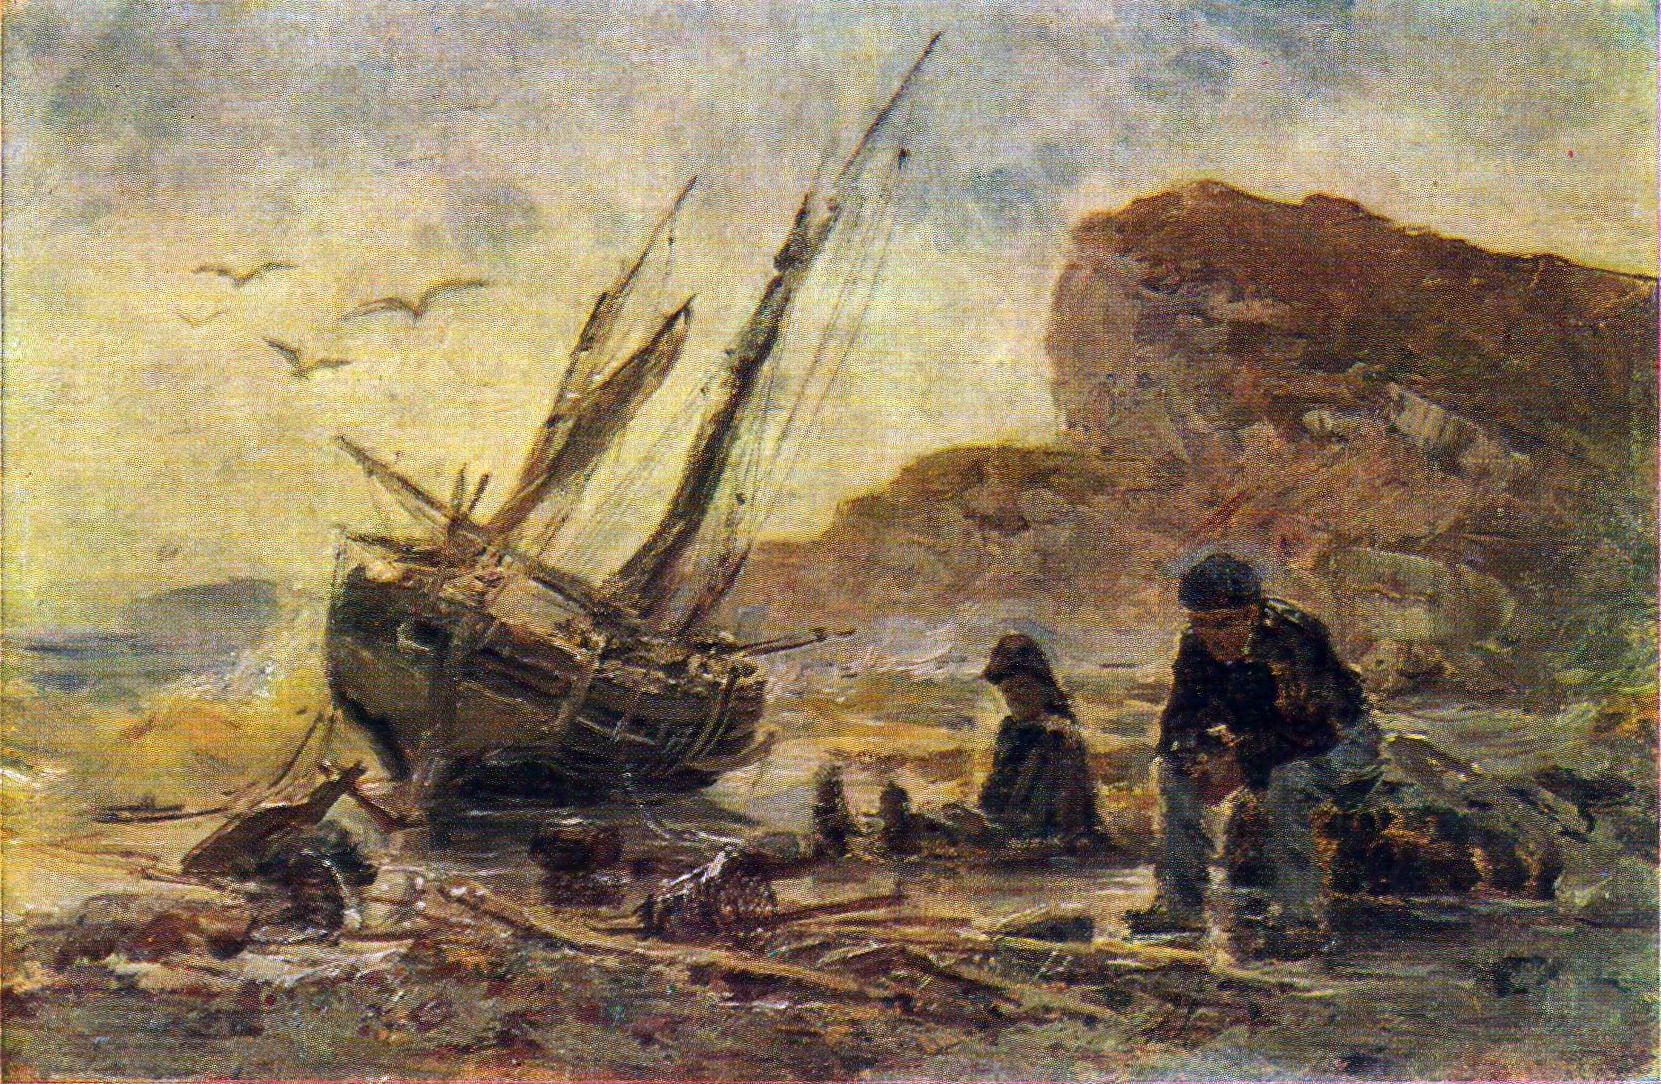 Константин Аполлонович Савицкий. "Рыбаки в Нормандии". 1875.